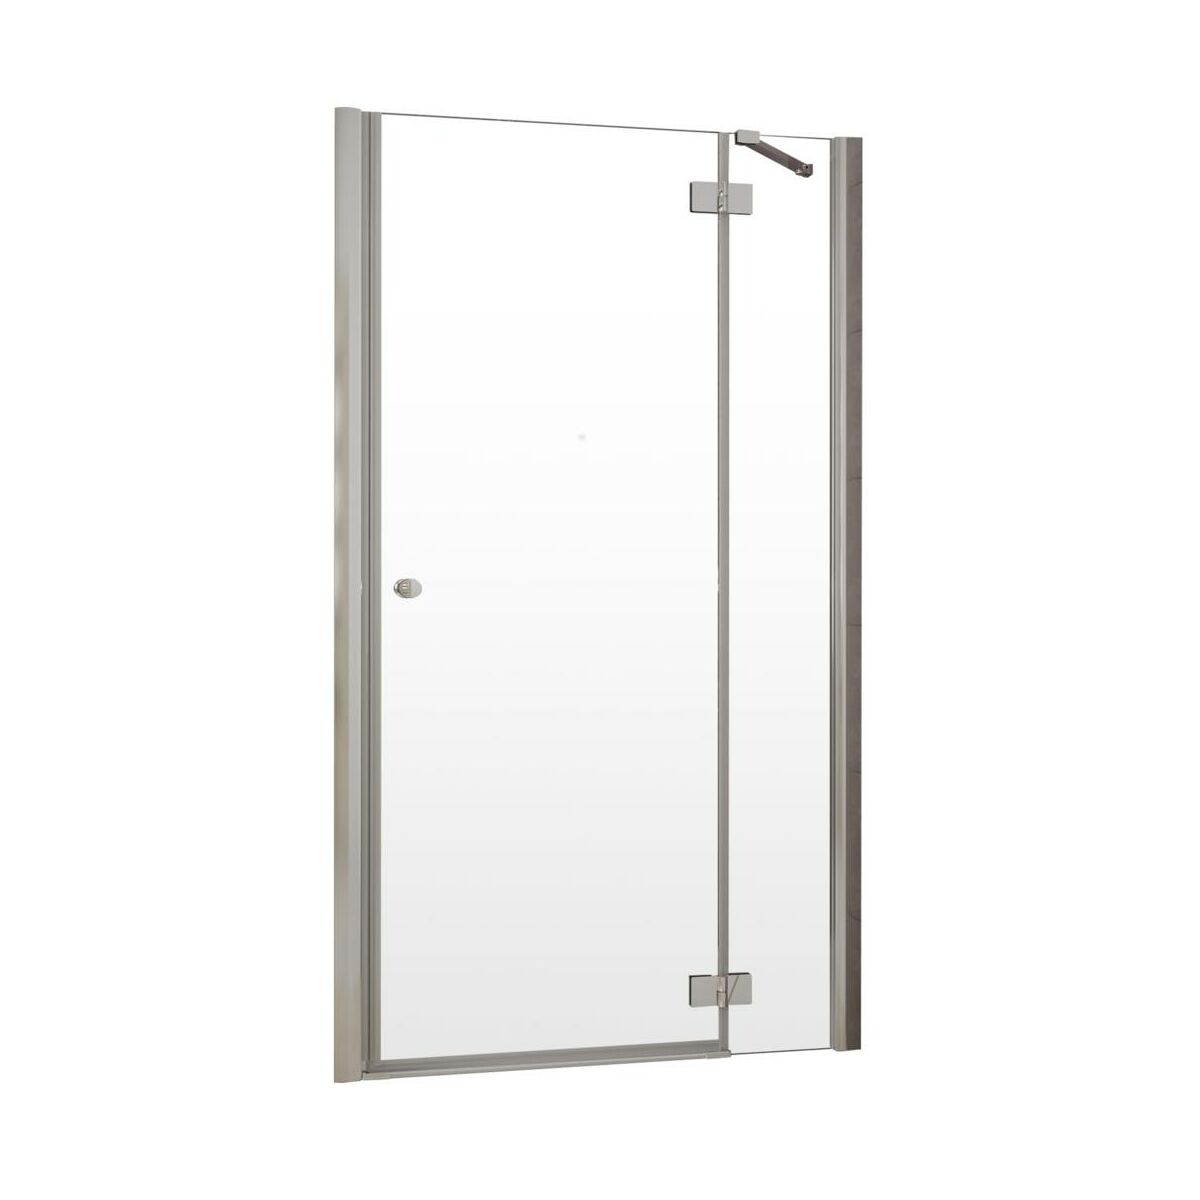 Drzwi prysznicowe Iridum 90 X 185 Valence